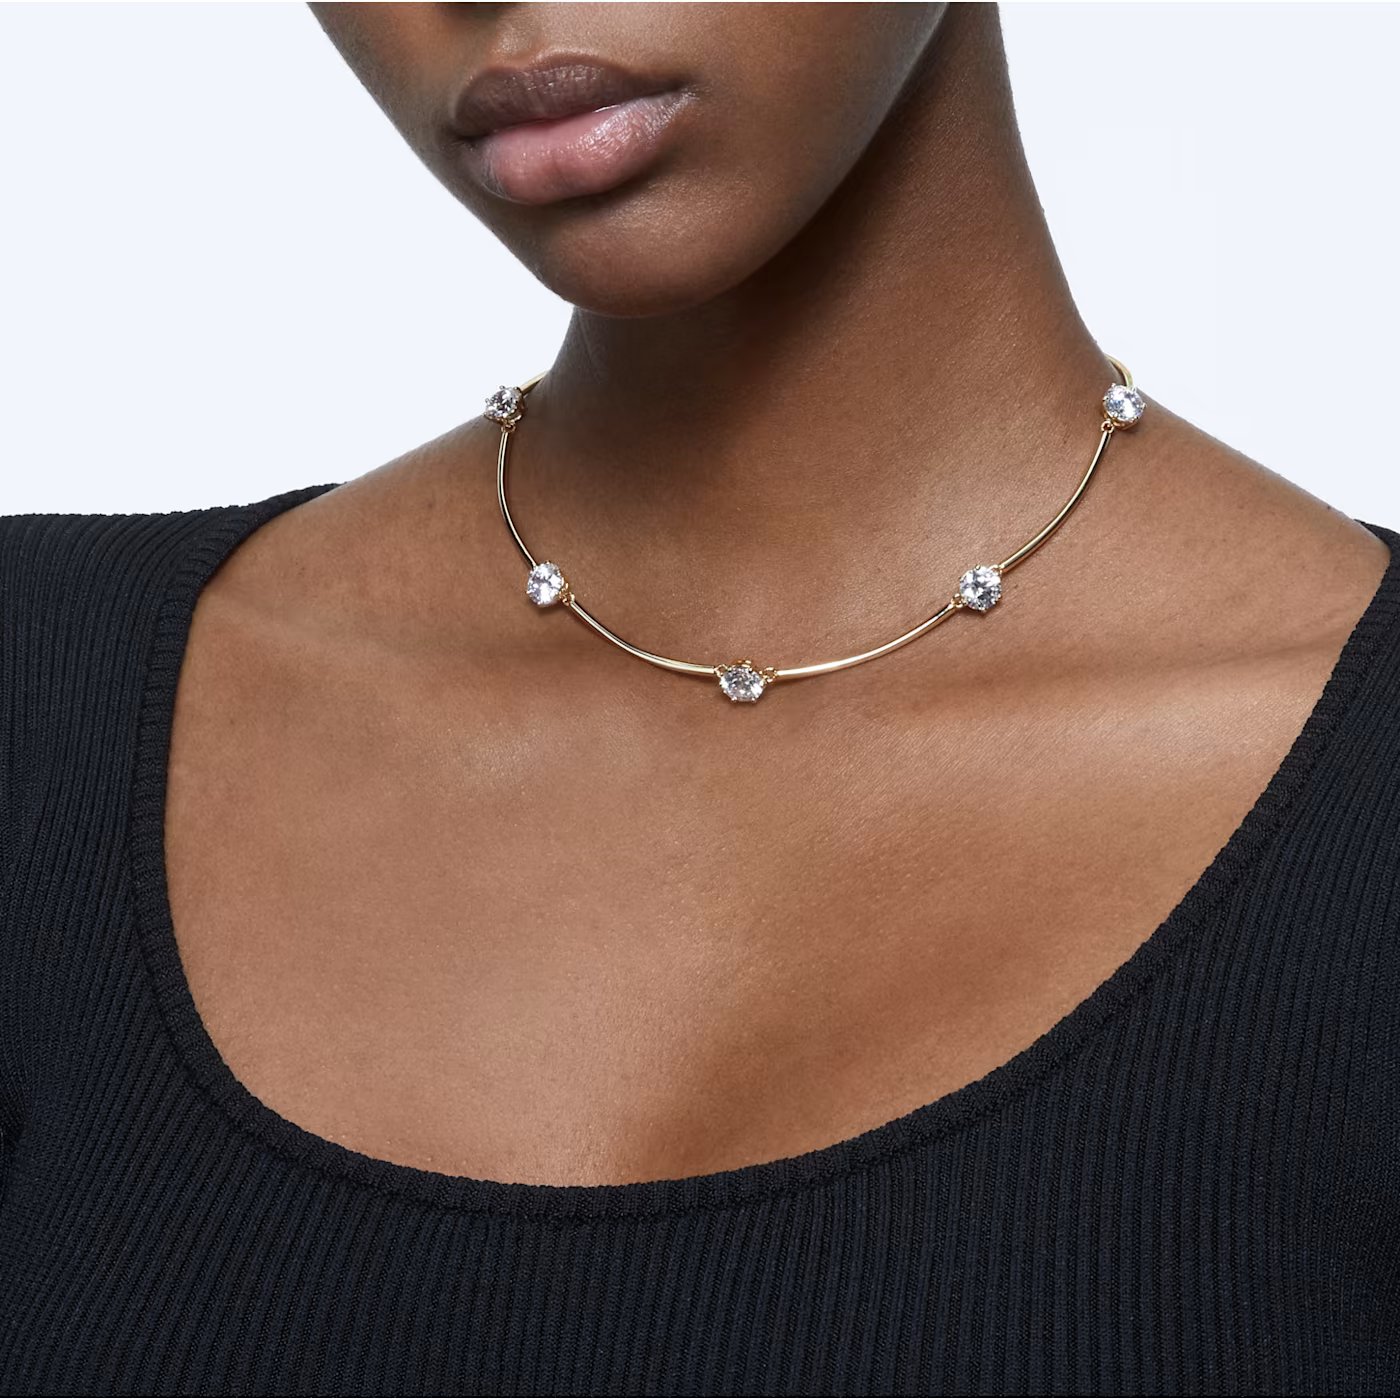 Constella necklace